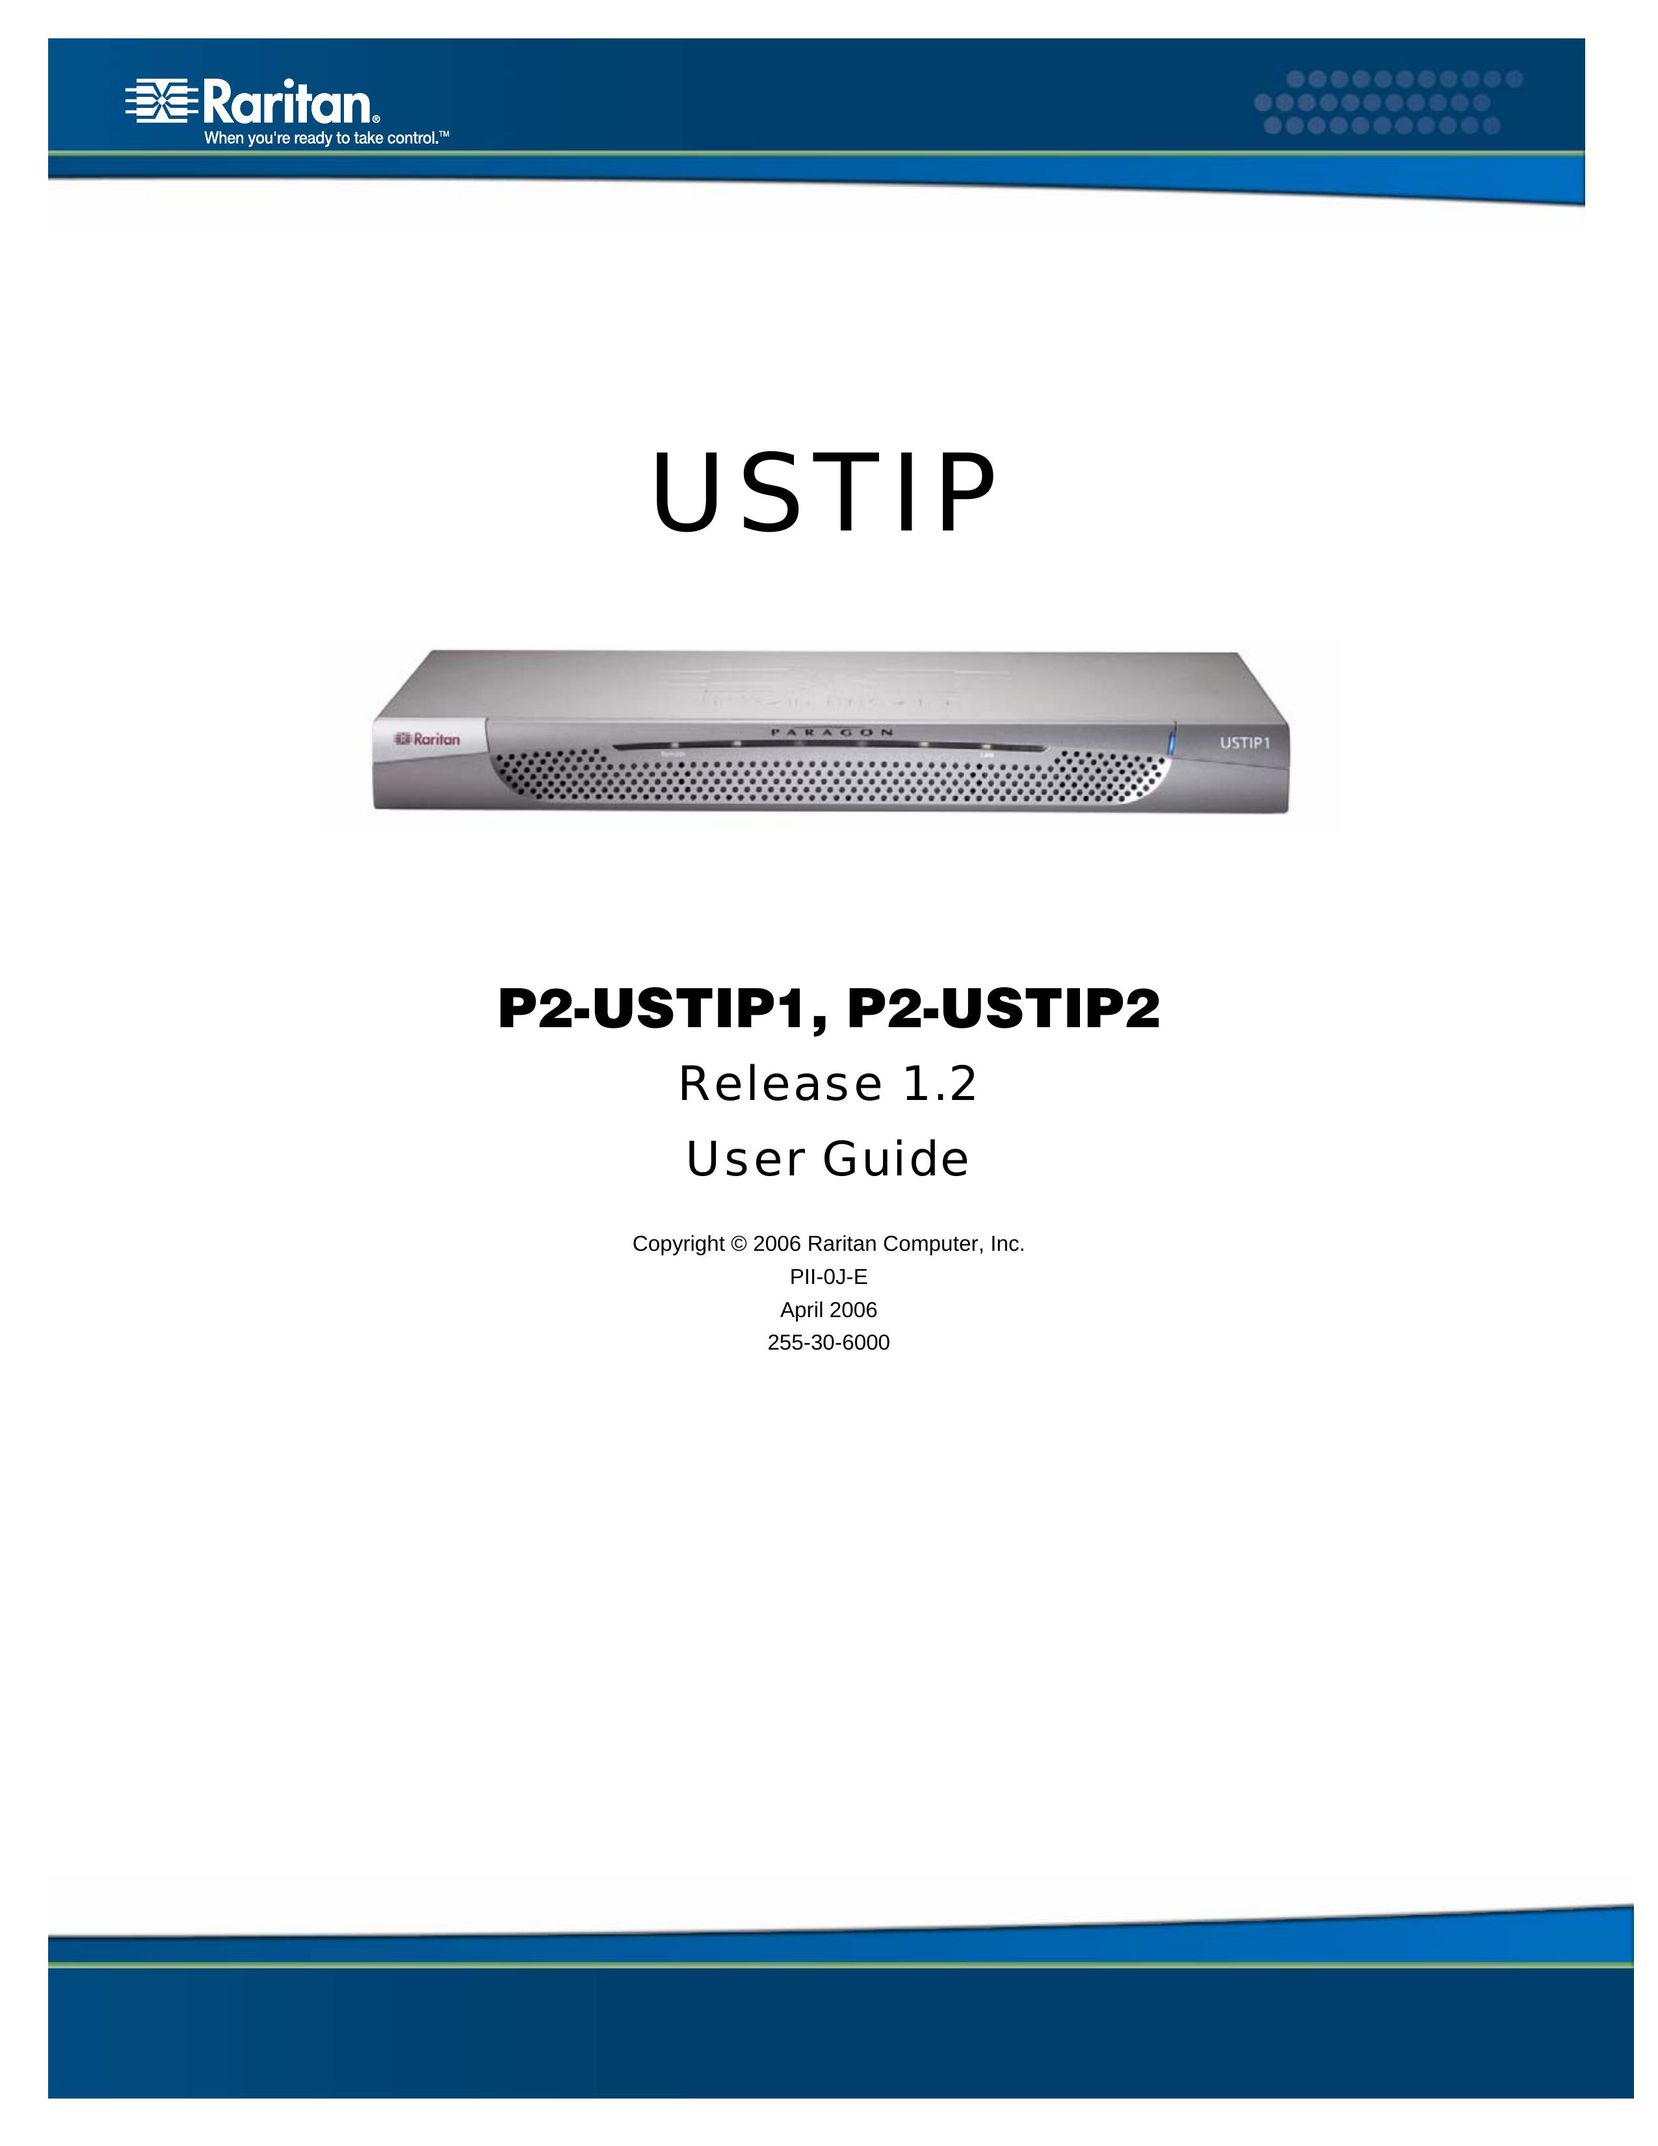 Raritan Computer P2-USTIP1 Network Card User Manual